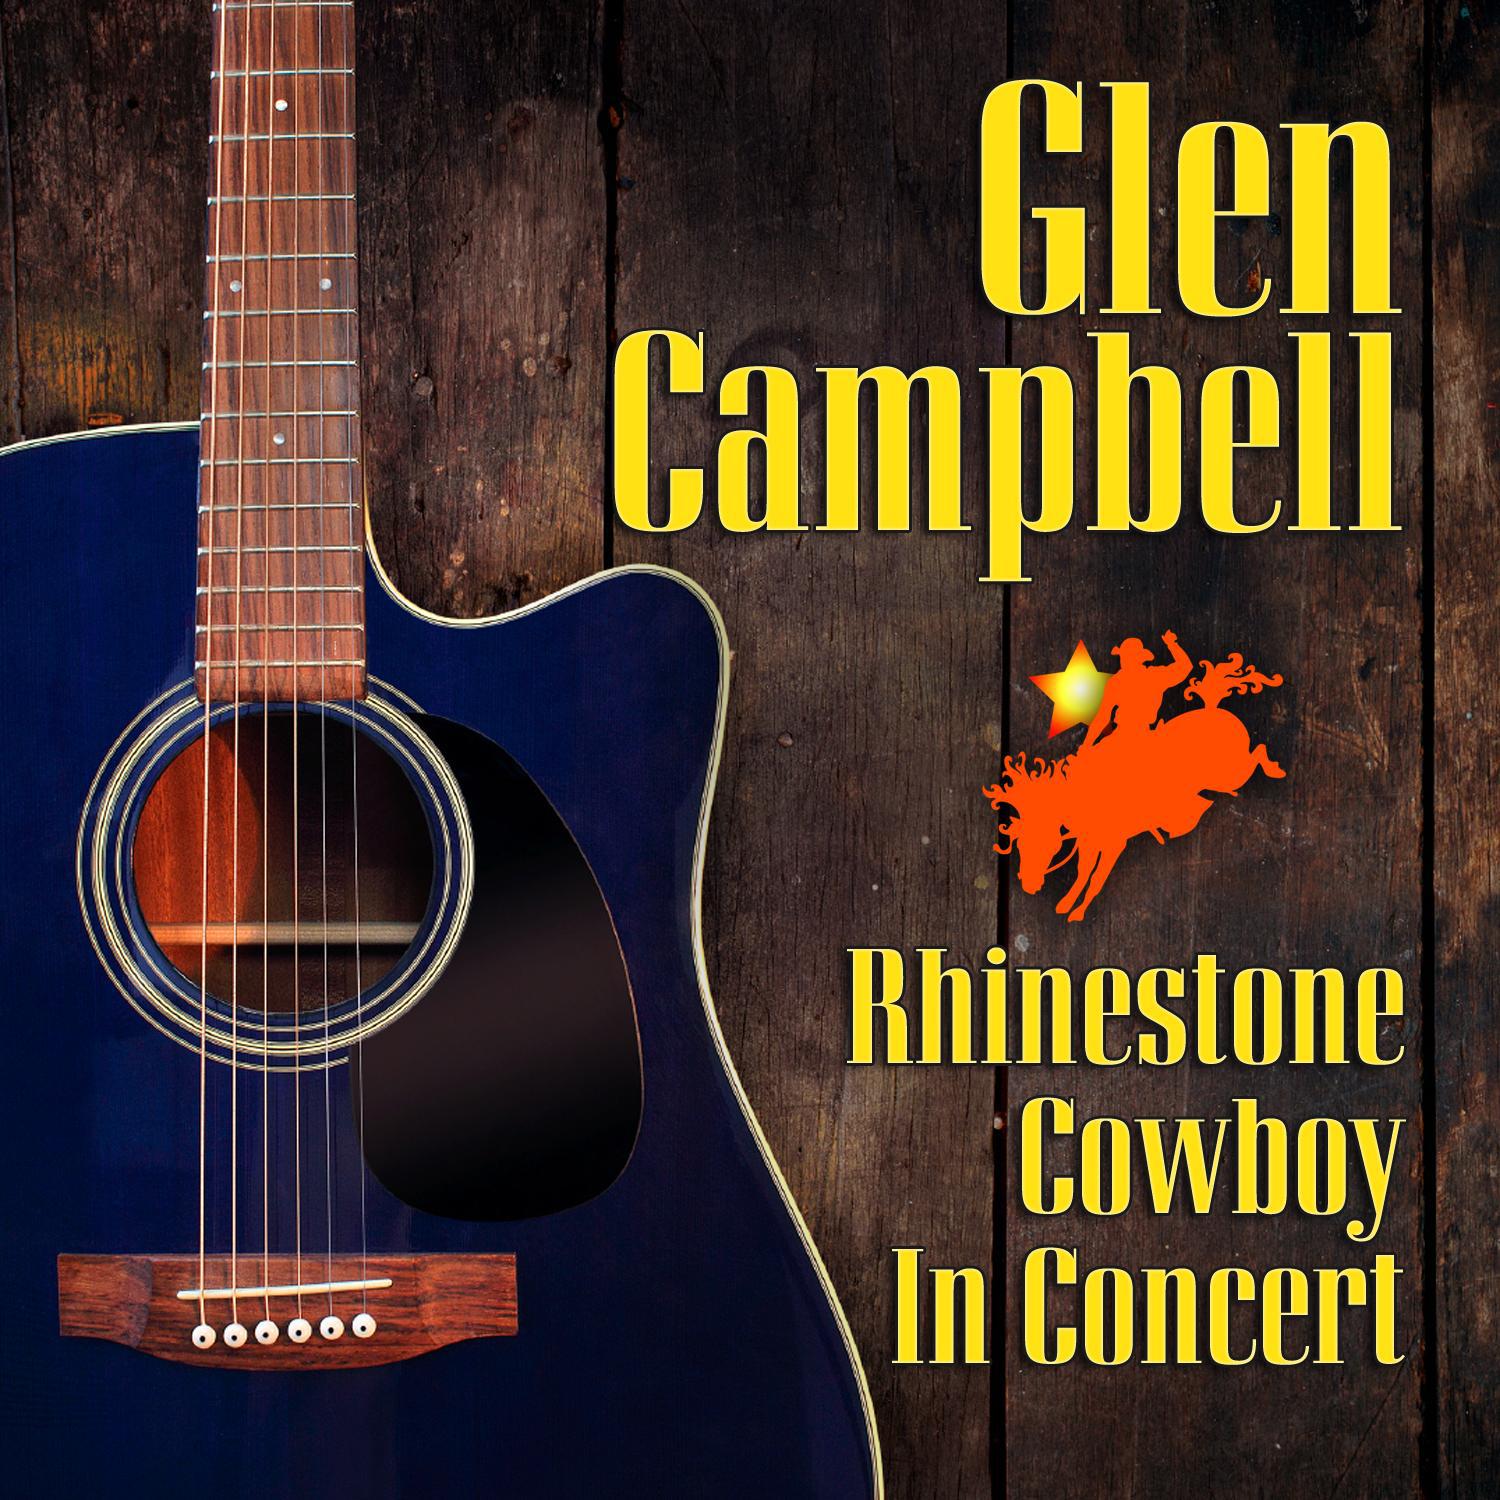 Rhinestone Cowboy in Concert专辑